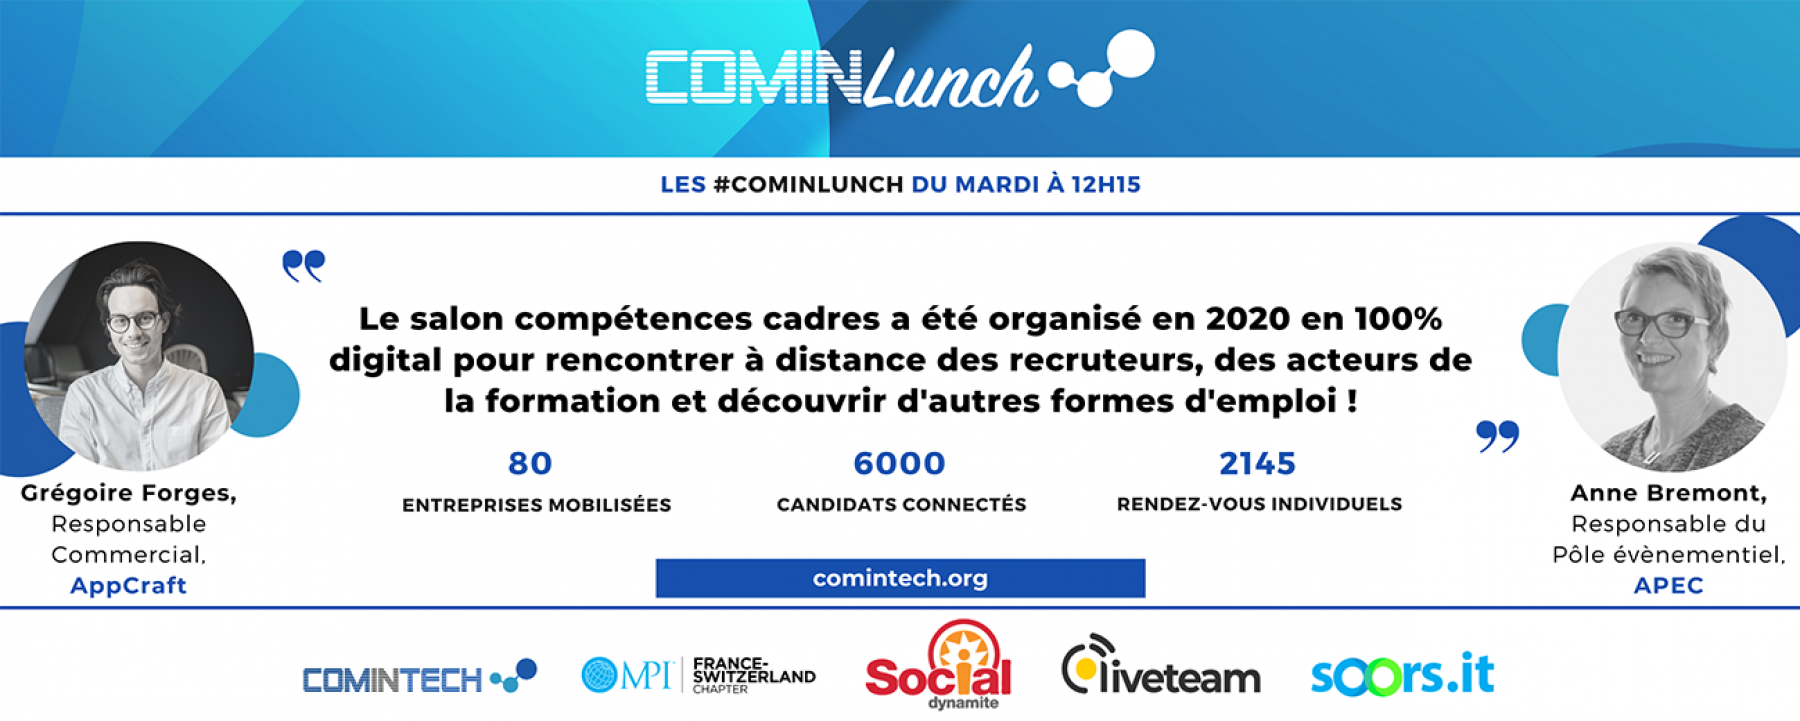 Les lives #ComInTech : live du mardi 23 février, organisé par MPI France Suisse